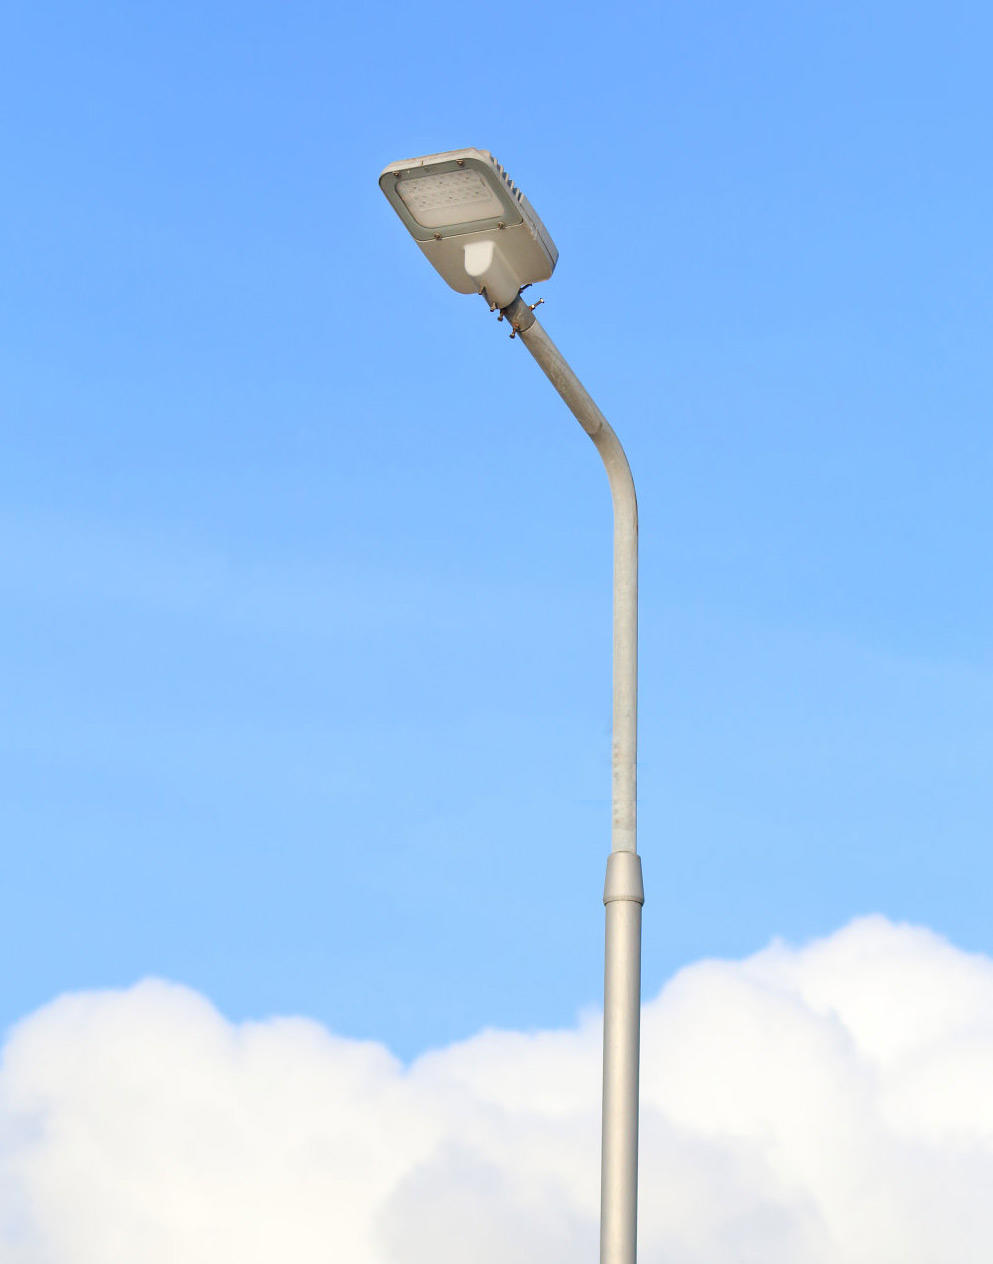 ALLTOP aluminum alloy 80w led street light company for lamp